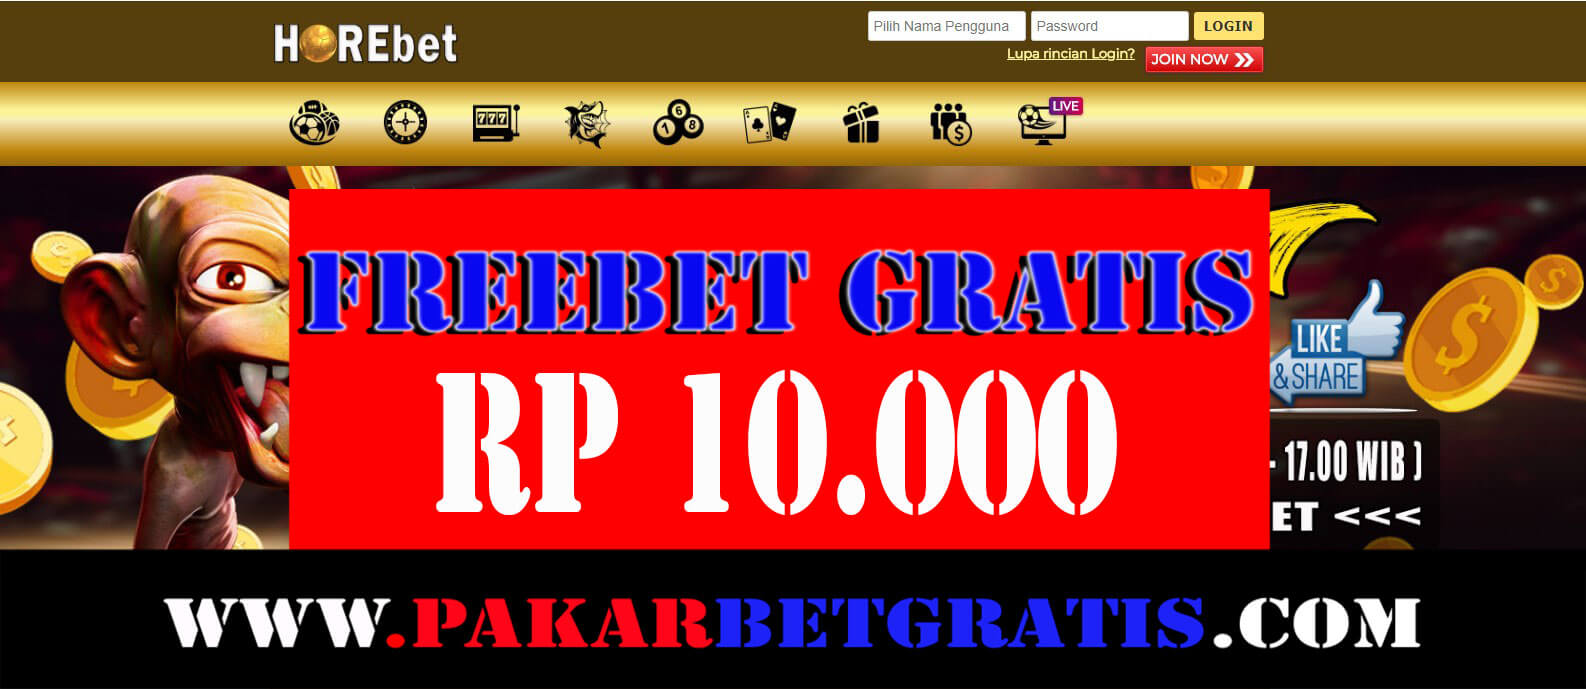 Horebet Freebet gratis Rp 10.000 Tanpa Deposit